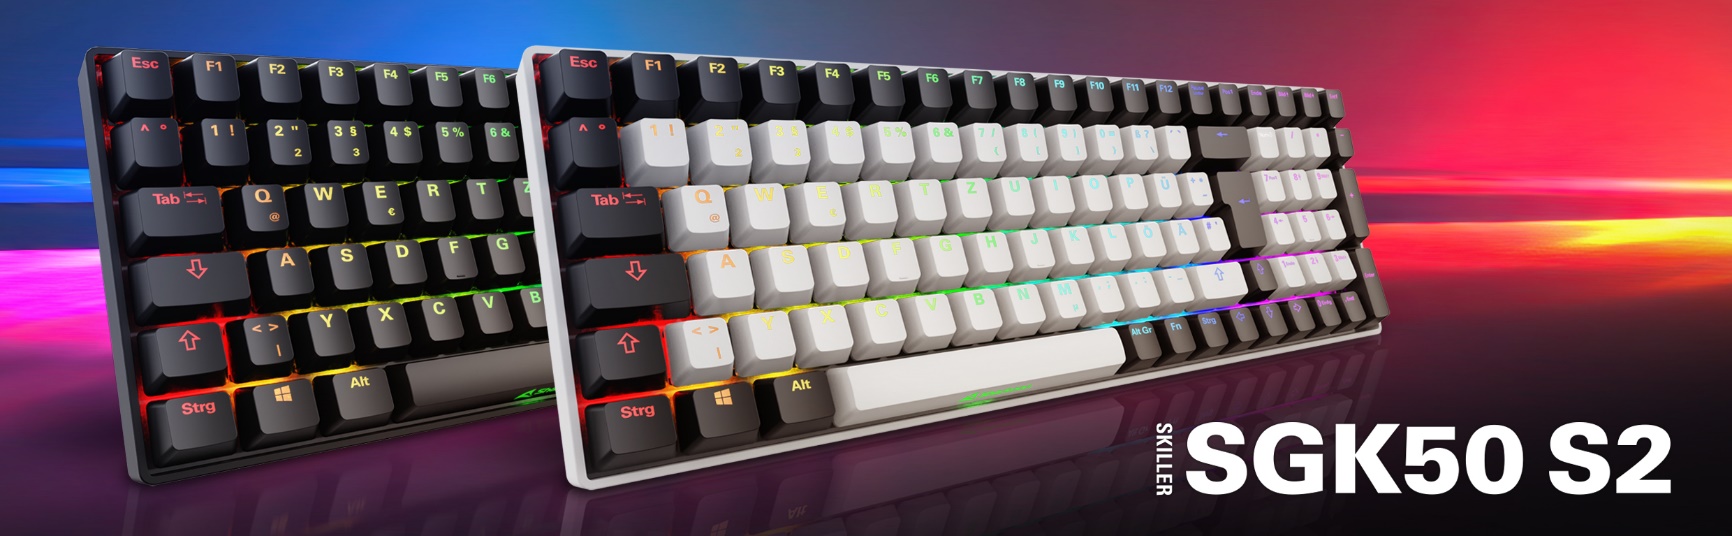 Sharkoon presenta el teclado SKILLER SGK50 S2